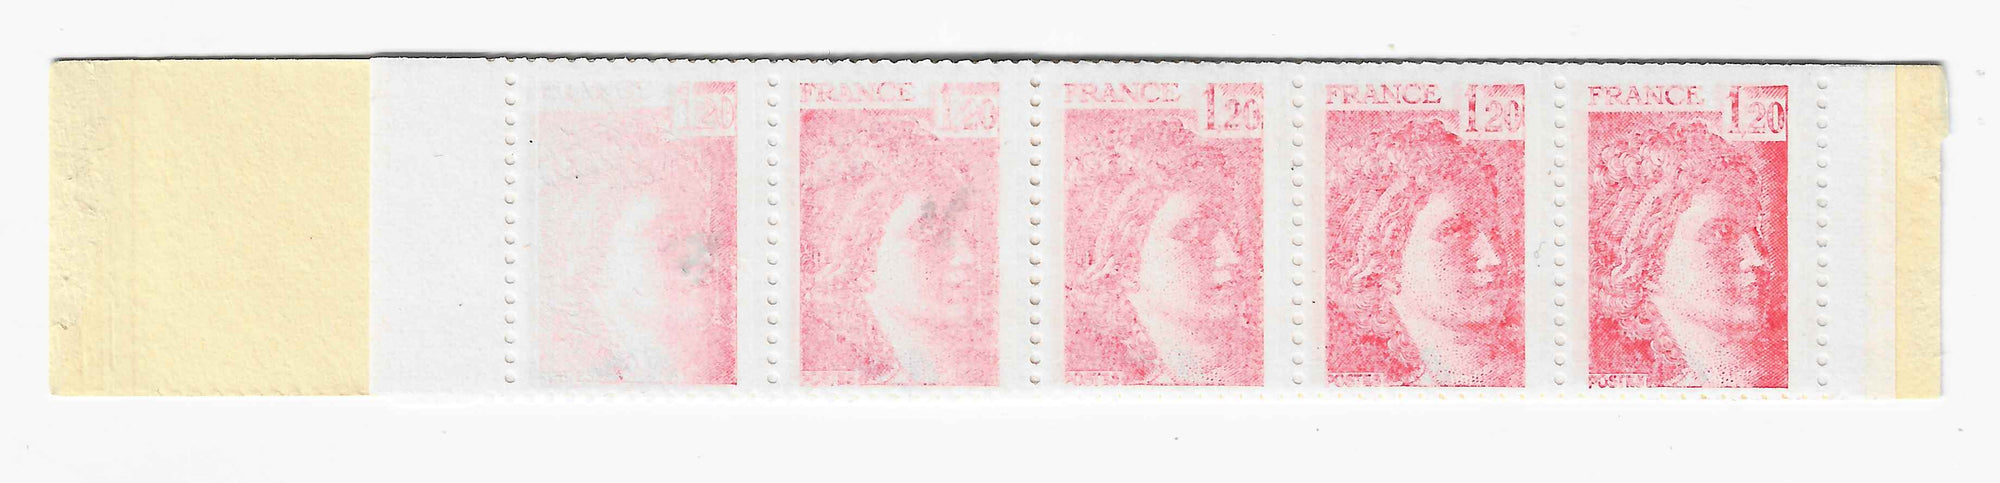 Carnet n°1974-C2b - Sabine - timbres imprimés à sec - neuf** - signé Calves